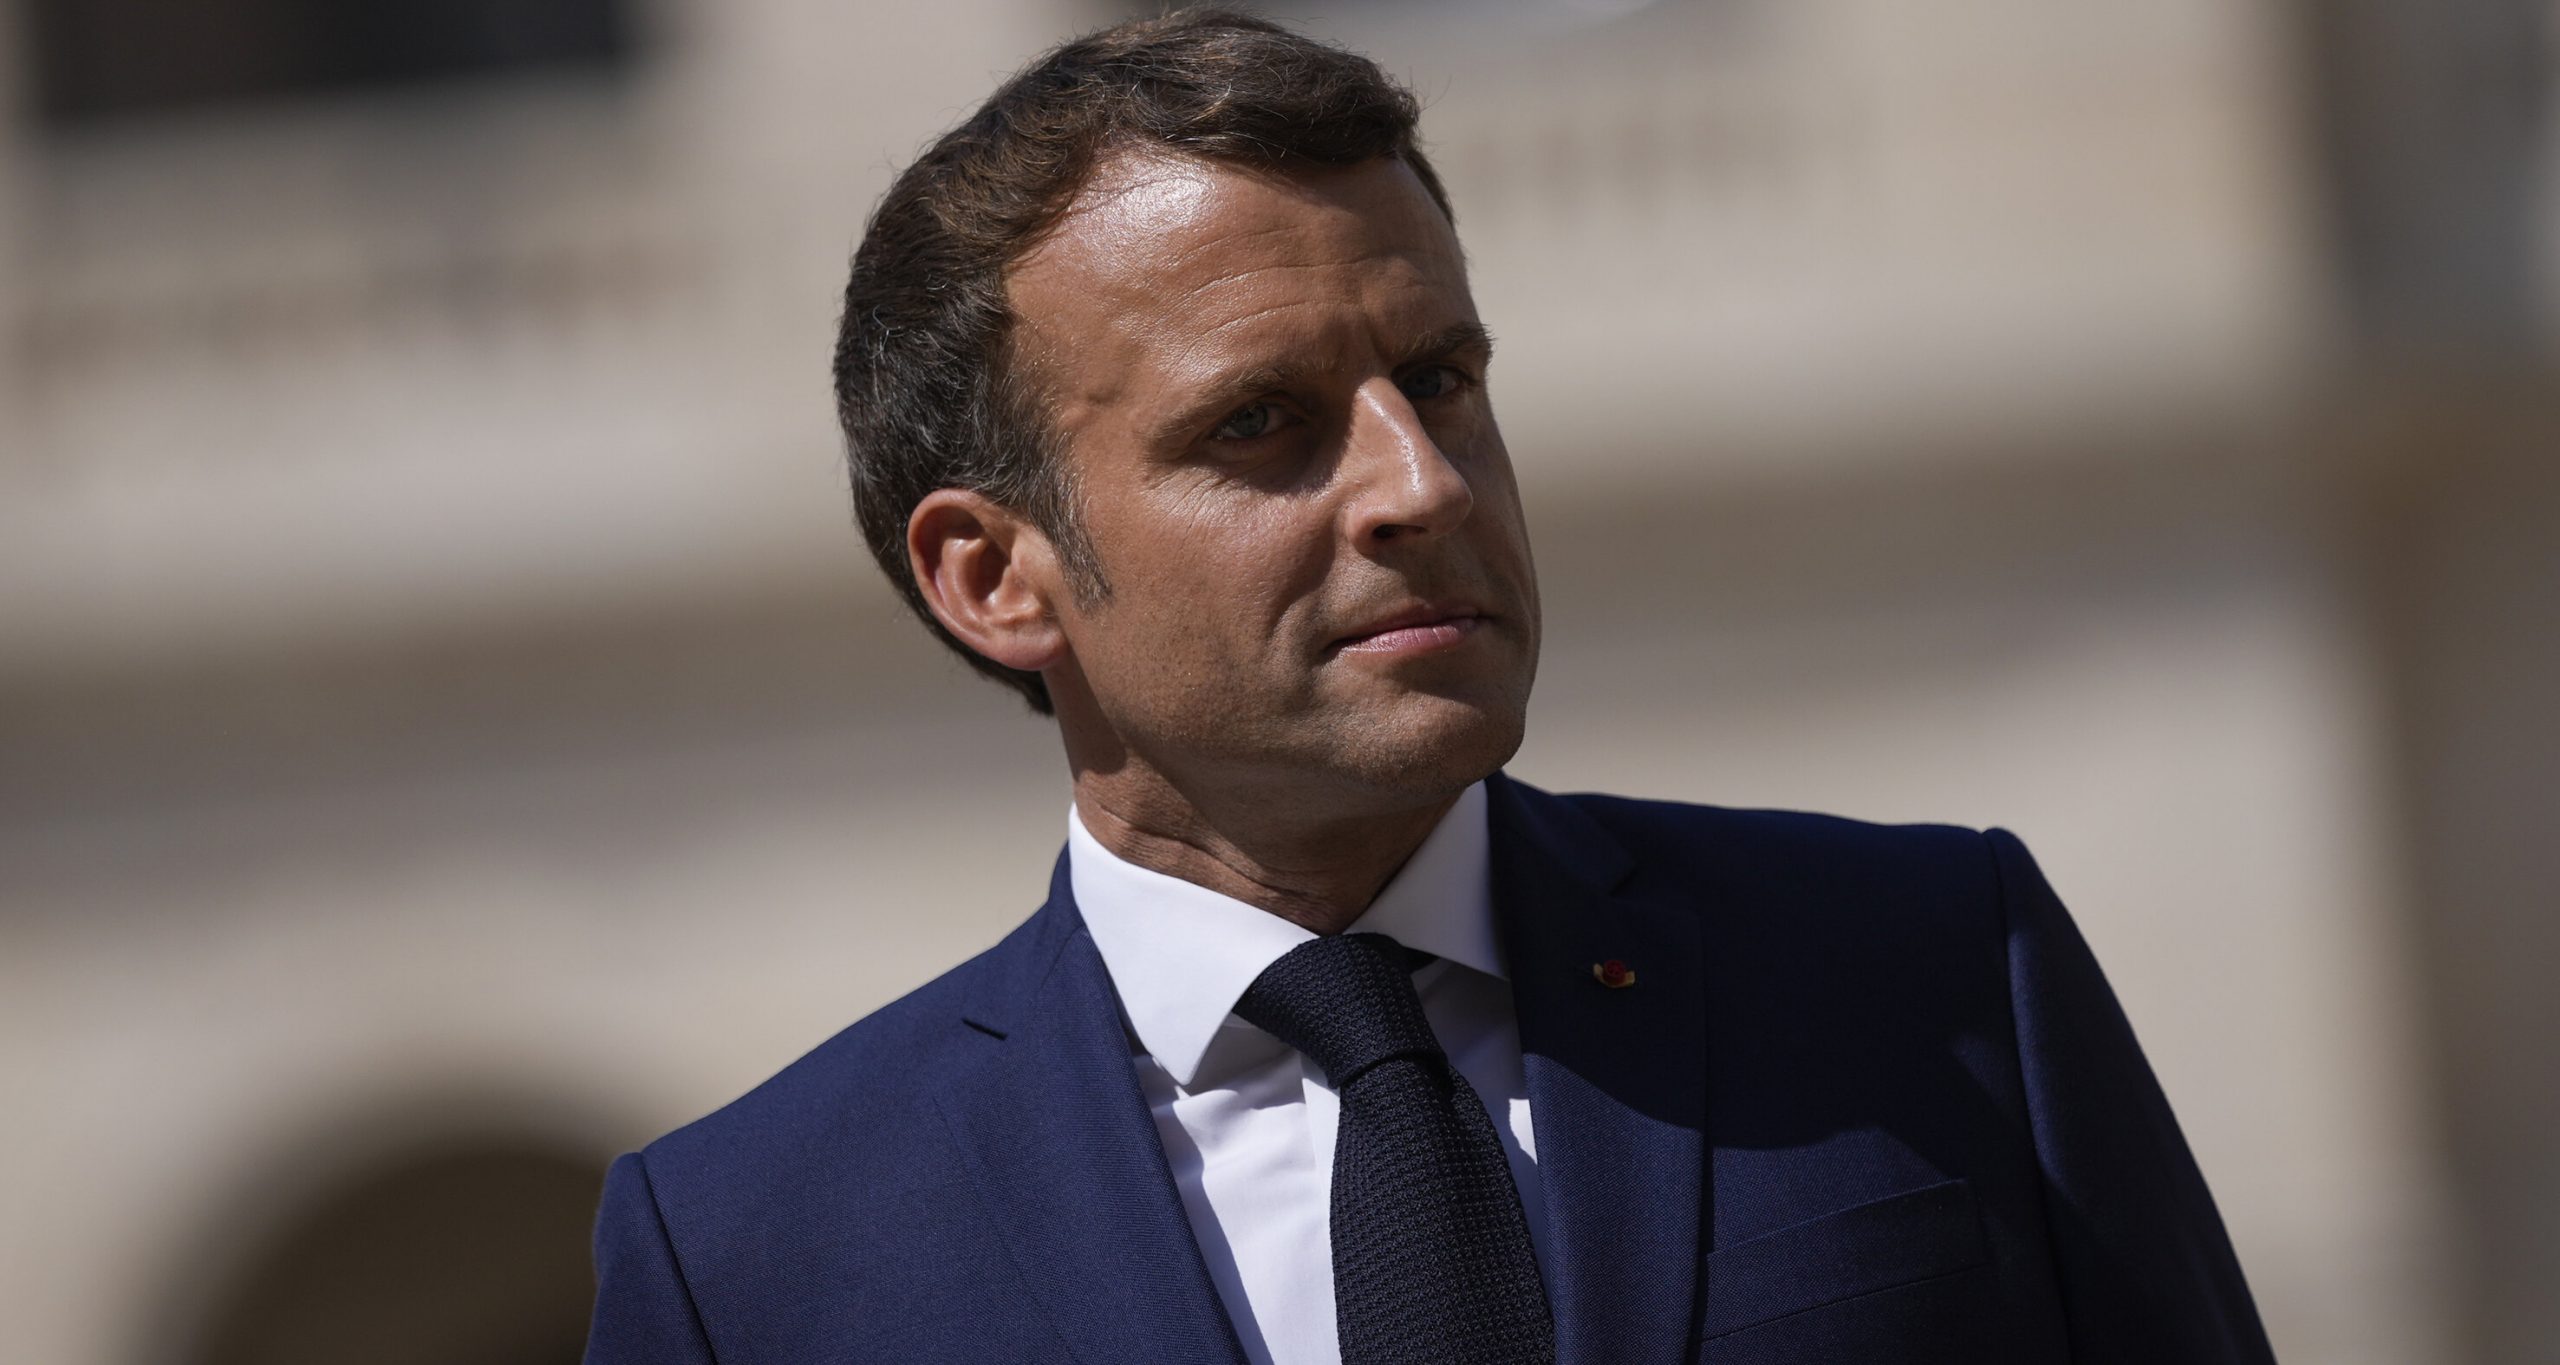 Pașaportul de vaccinare obligatoriu pentru a intra în cafenele reprezintă „libertate”, crede Macron